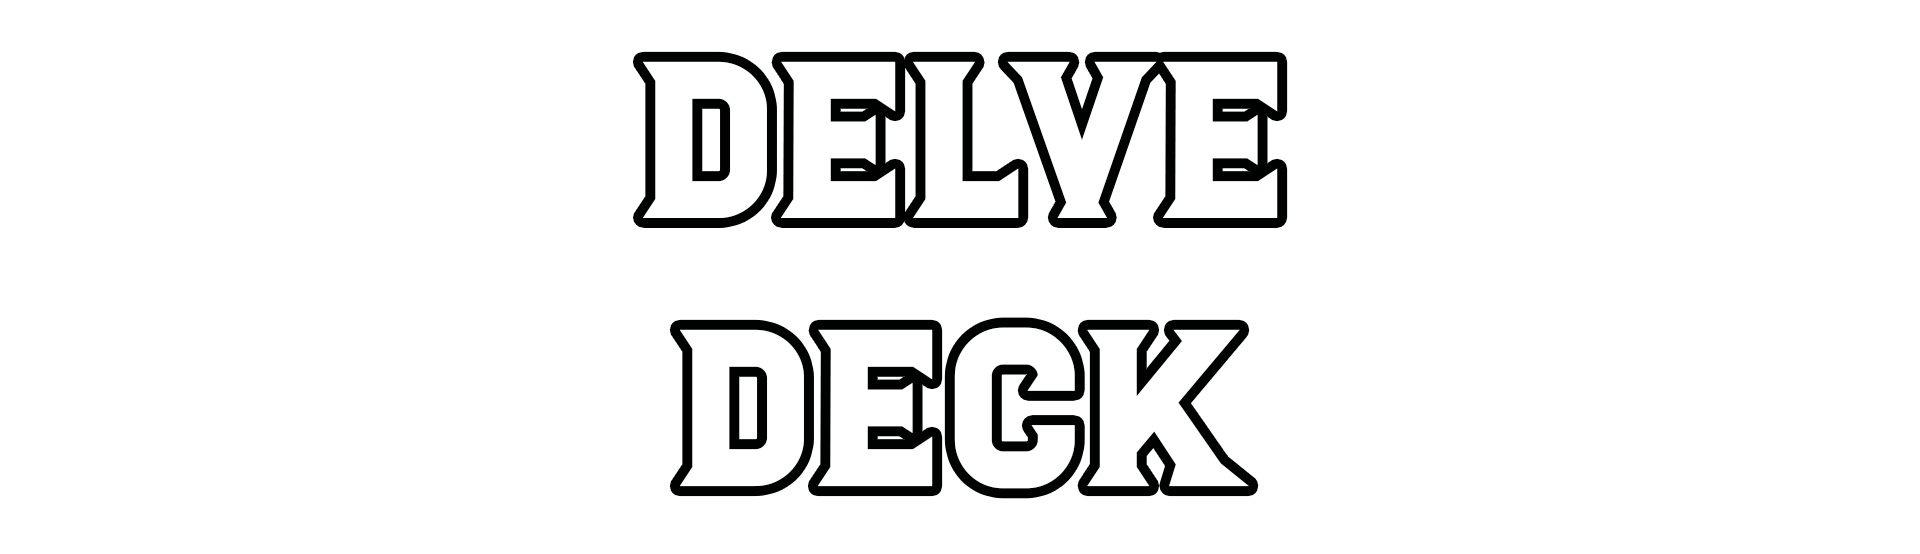 DELVE DECK - Dungeon Building Tools